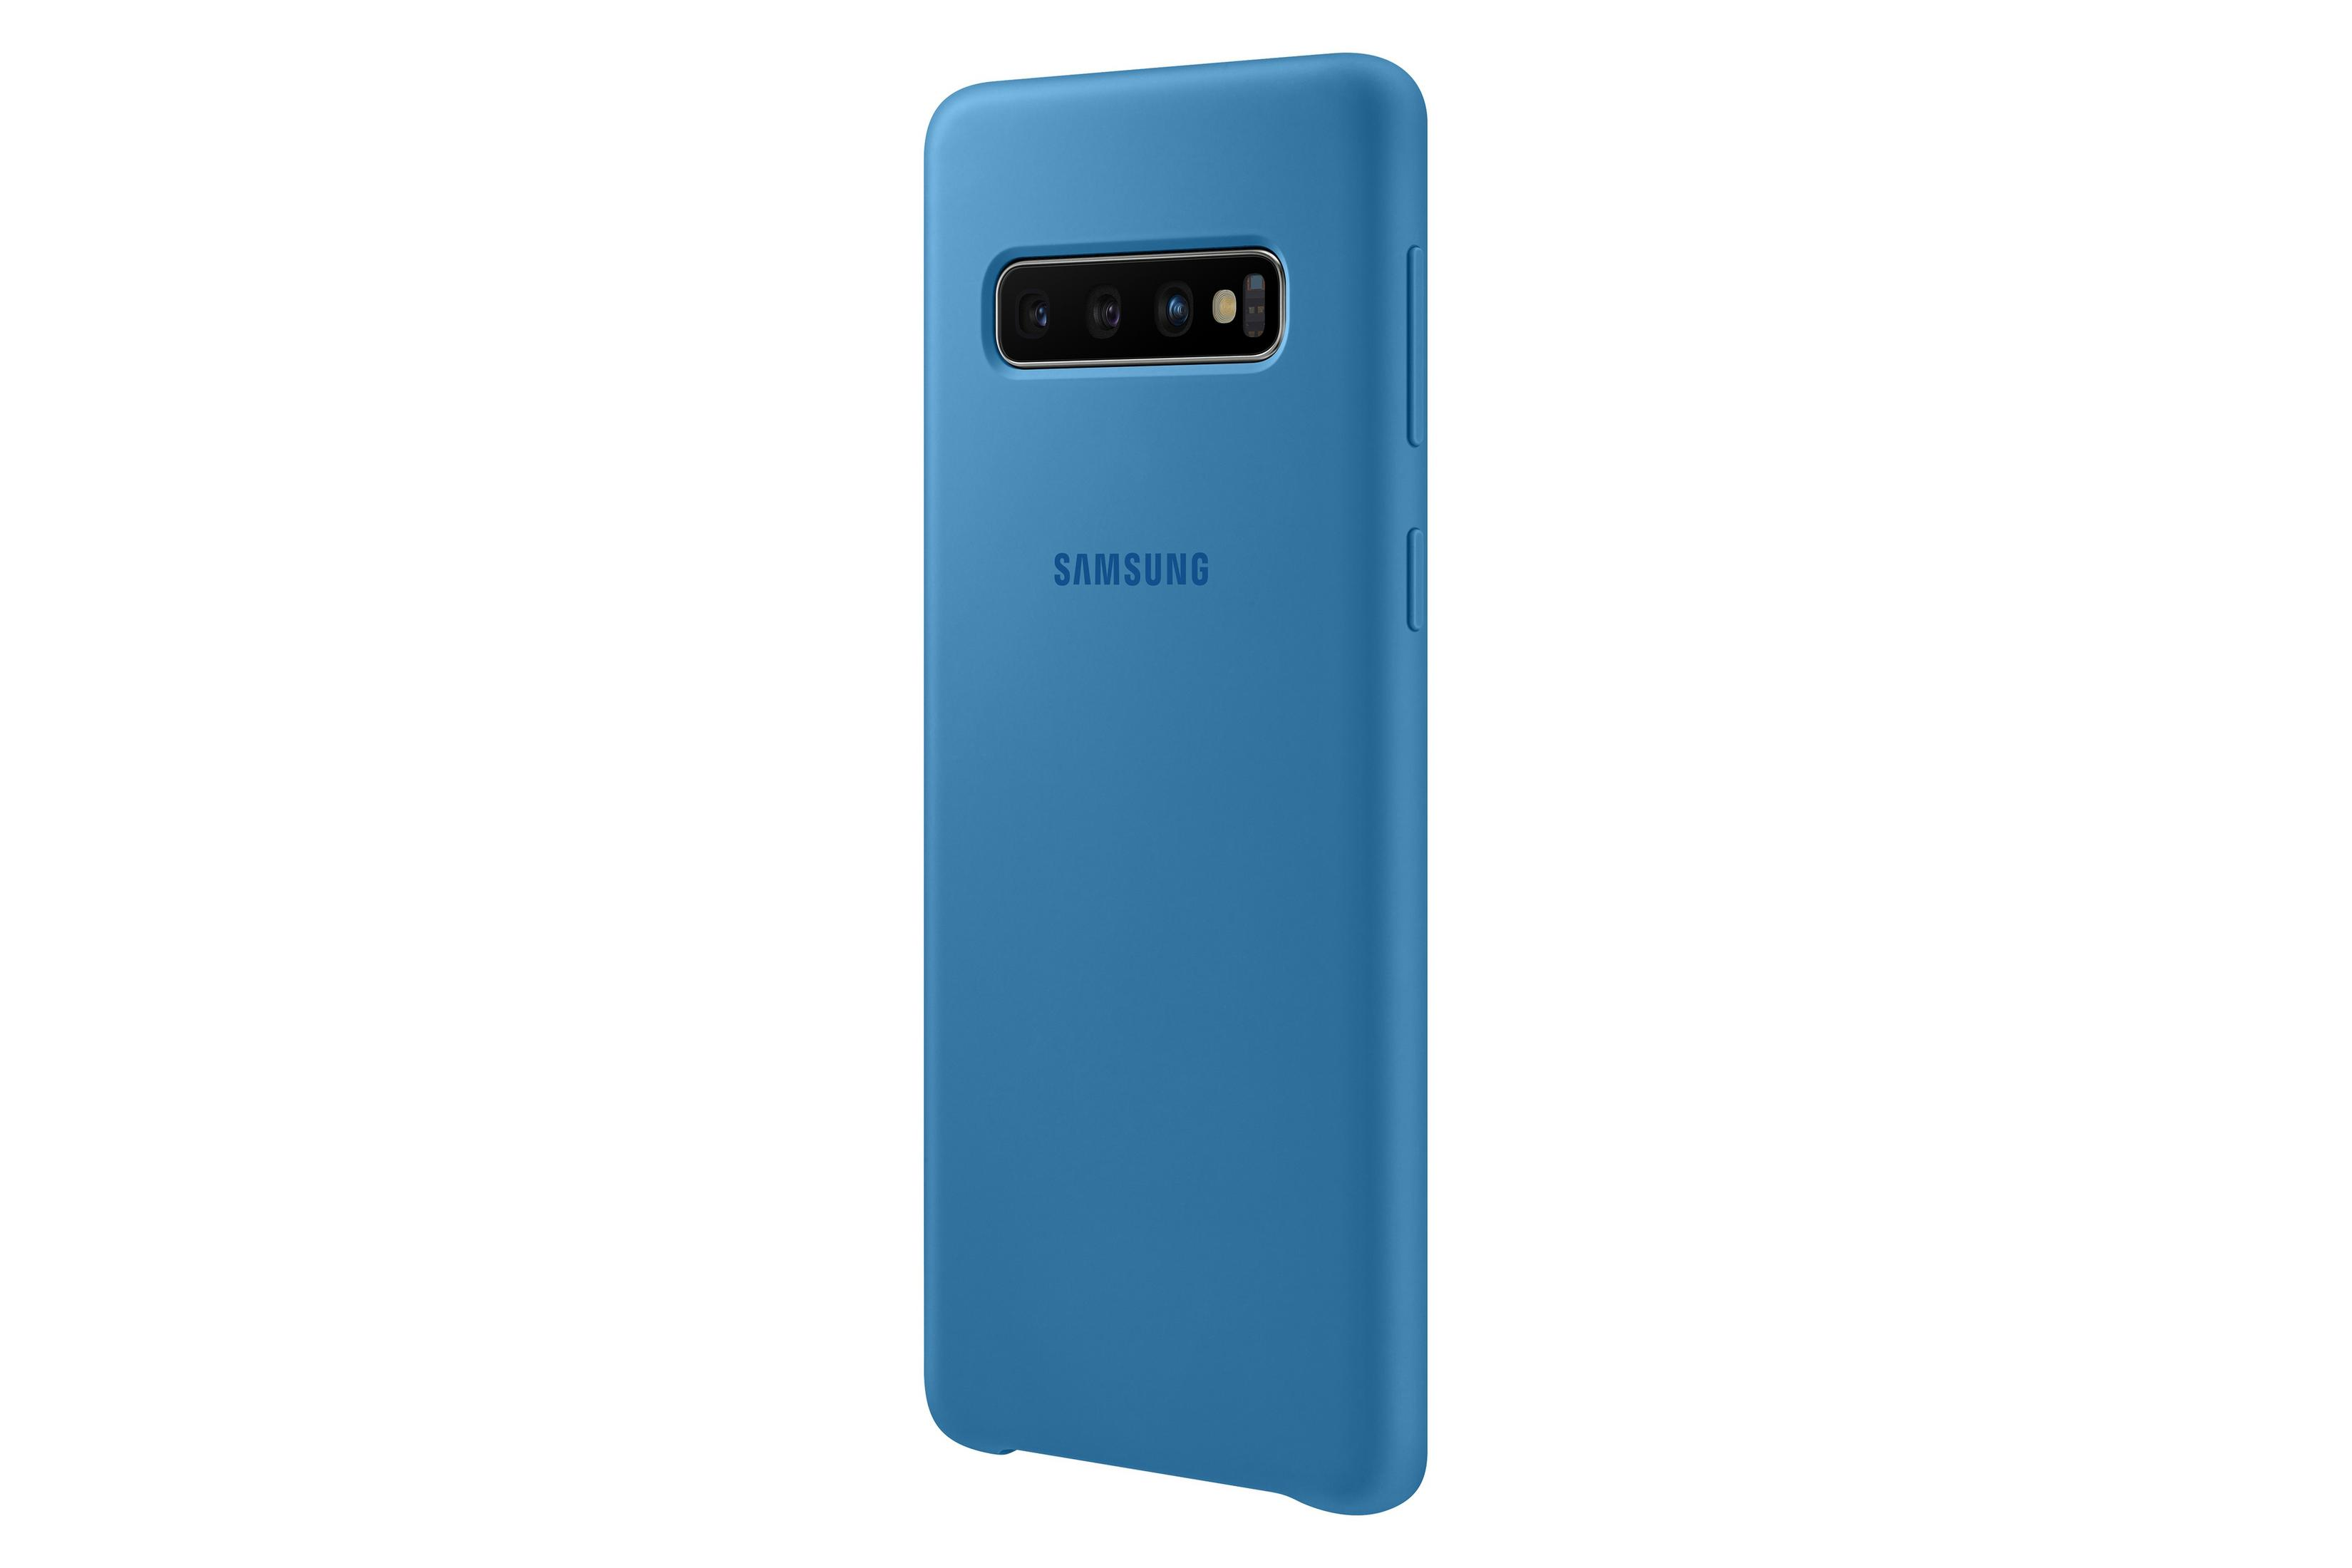 S10, COVER Blau S10 Galaxy EF-PG973TLEGWW BLUE, Samsung, SAMSUNG Backcover, SILICONE